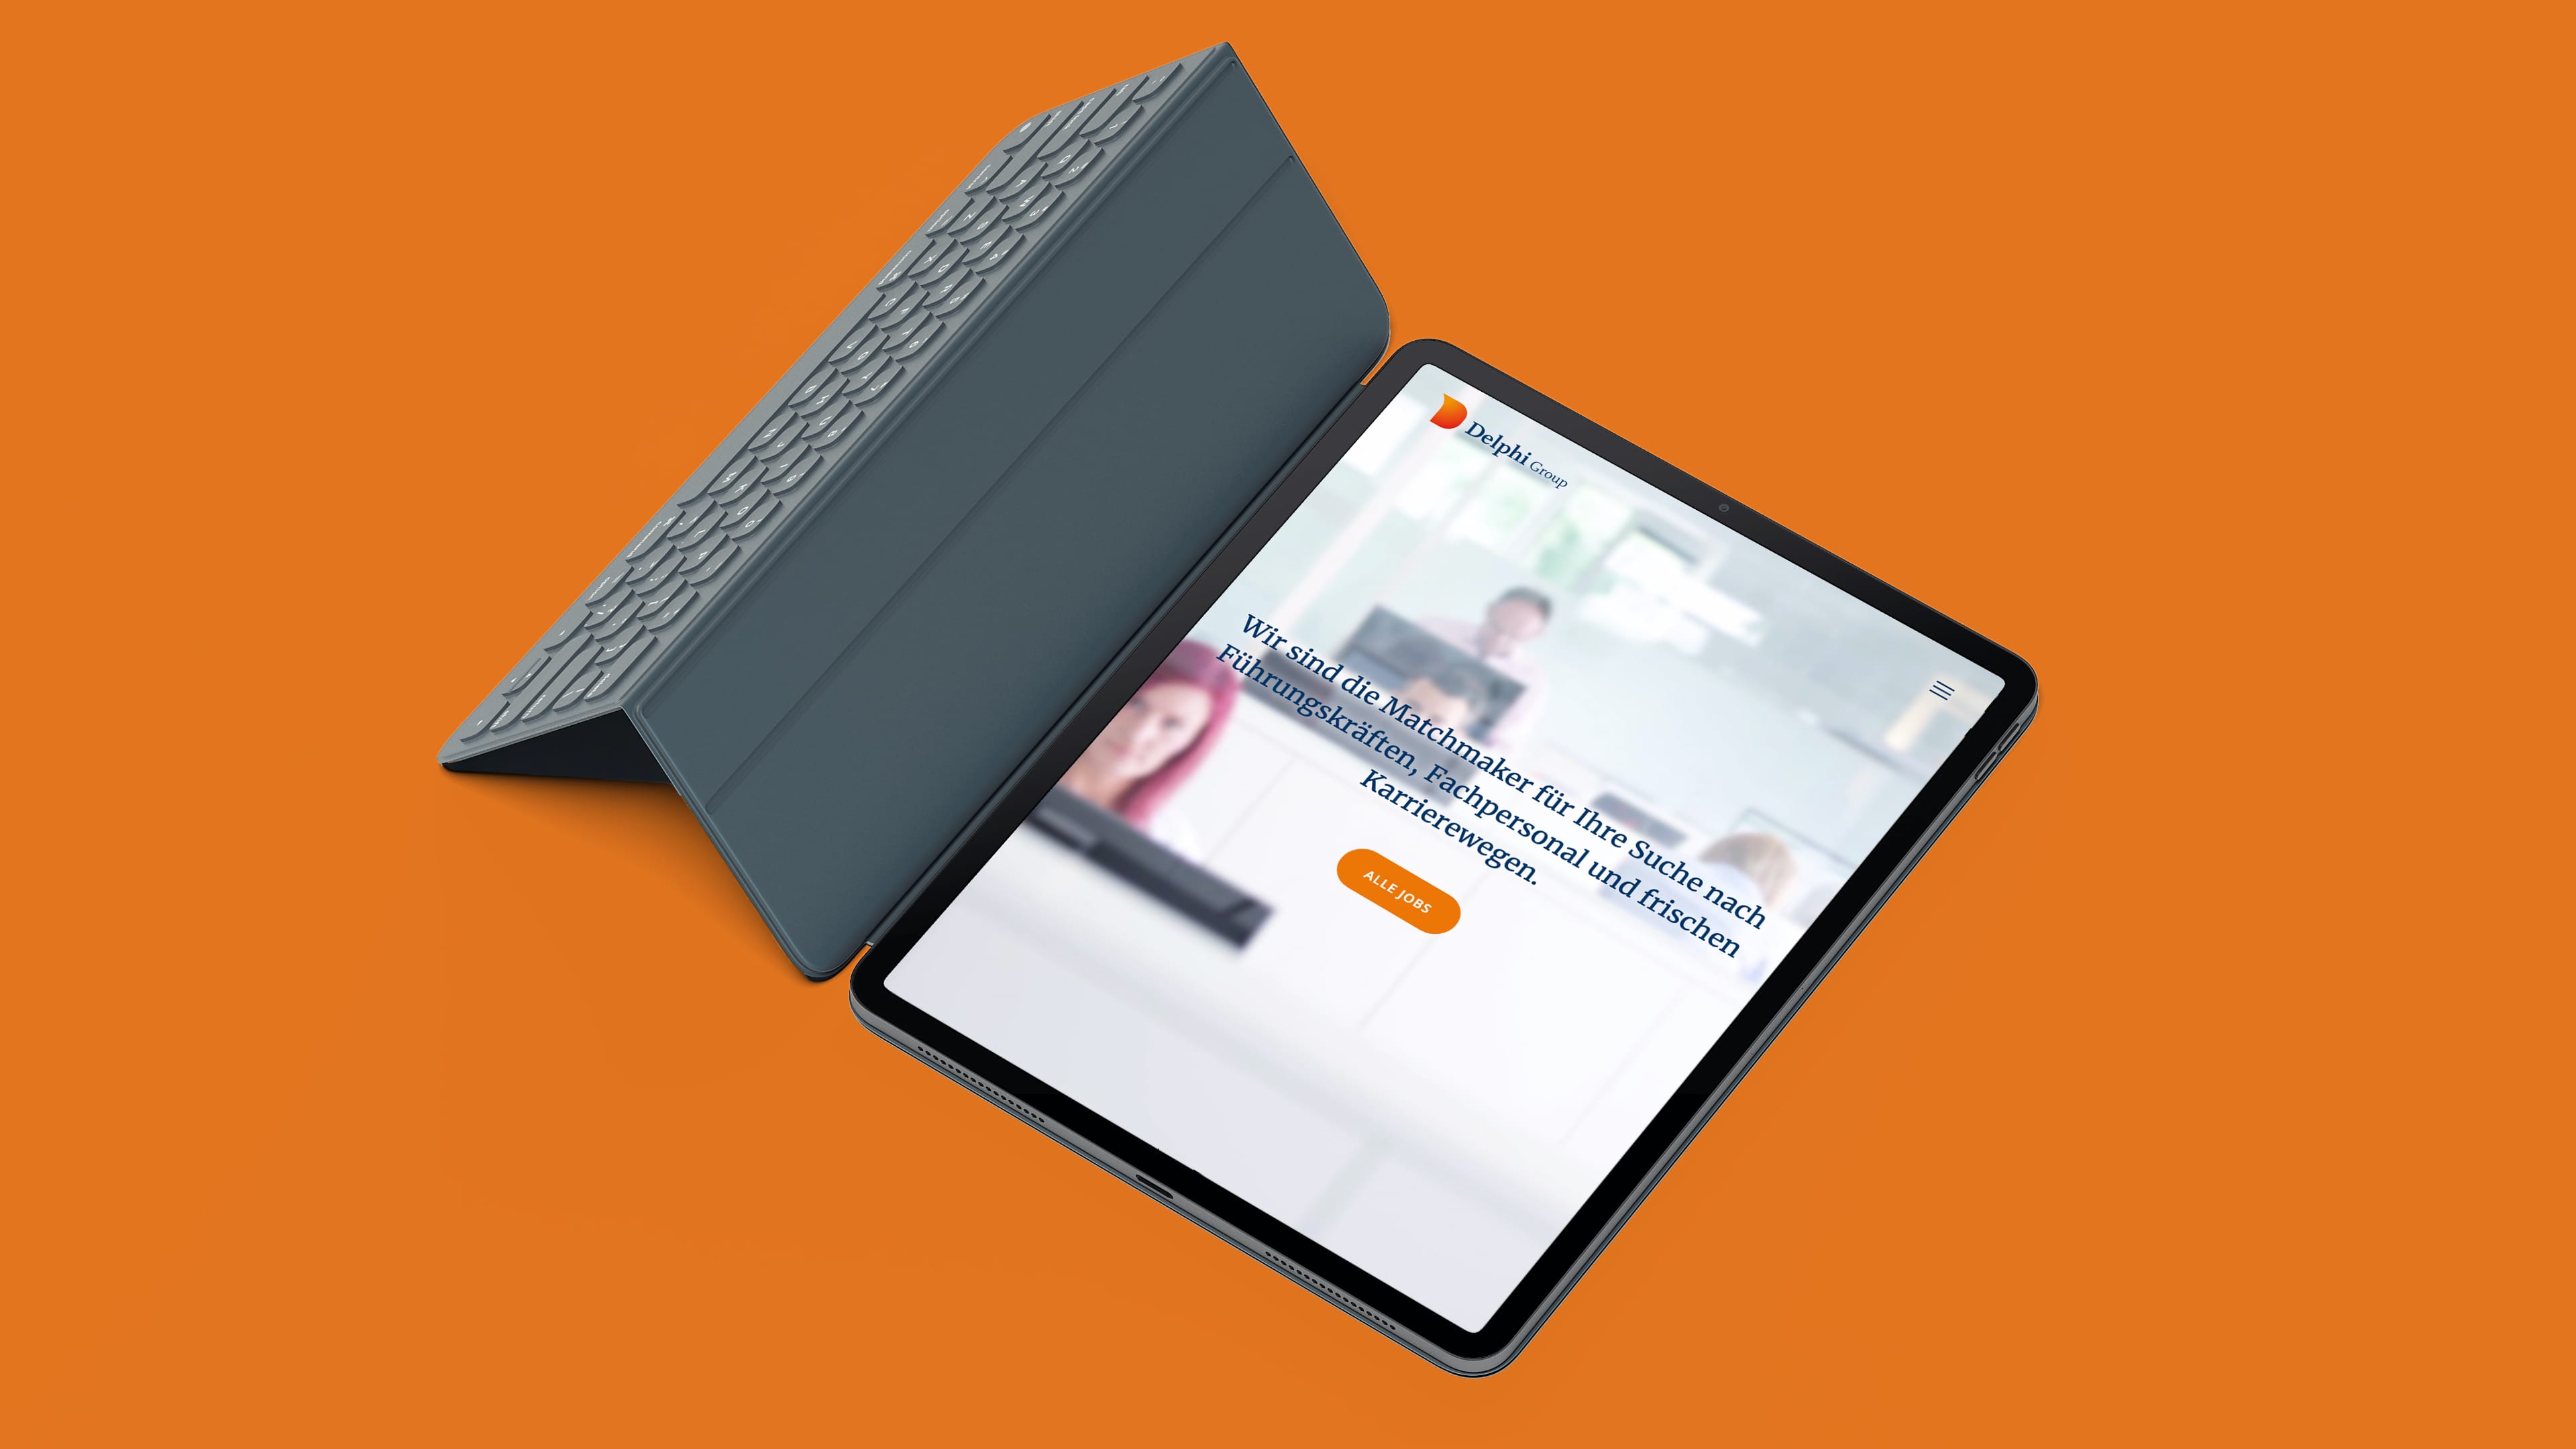 Tablet mit Tastatur zeigt Website der Delphi Group vor orangenem Hintergrund, Text "Wir sind die Matchmaker für Ihre Suche nach Führungskräften, Fachpersonal und frischen Karrierewegen"